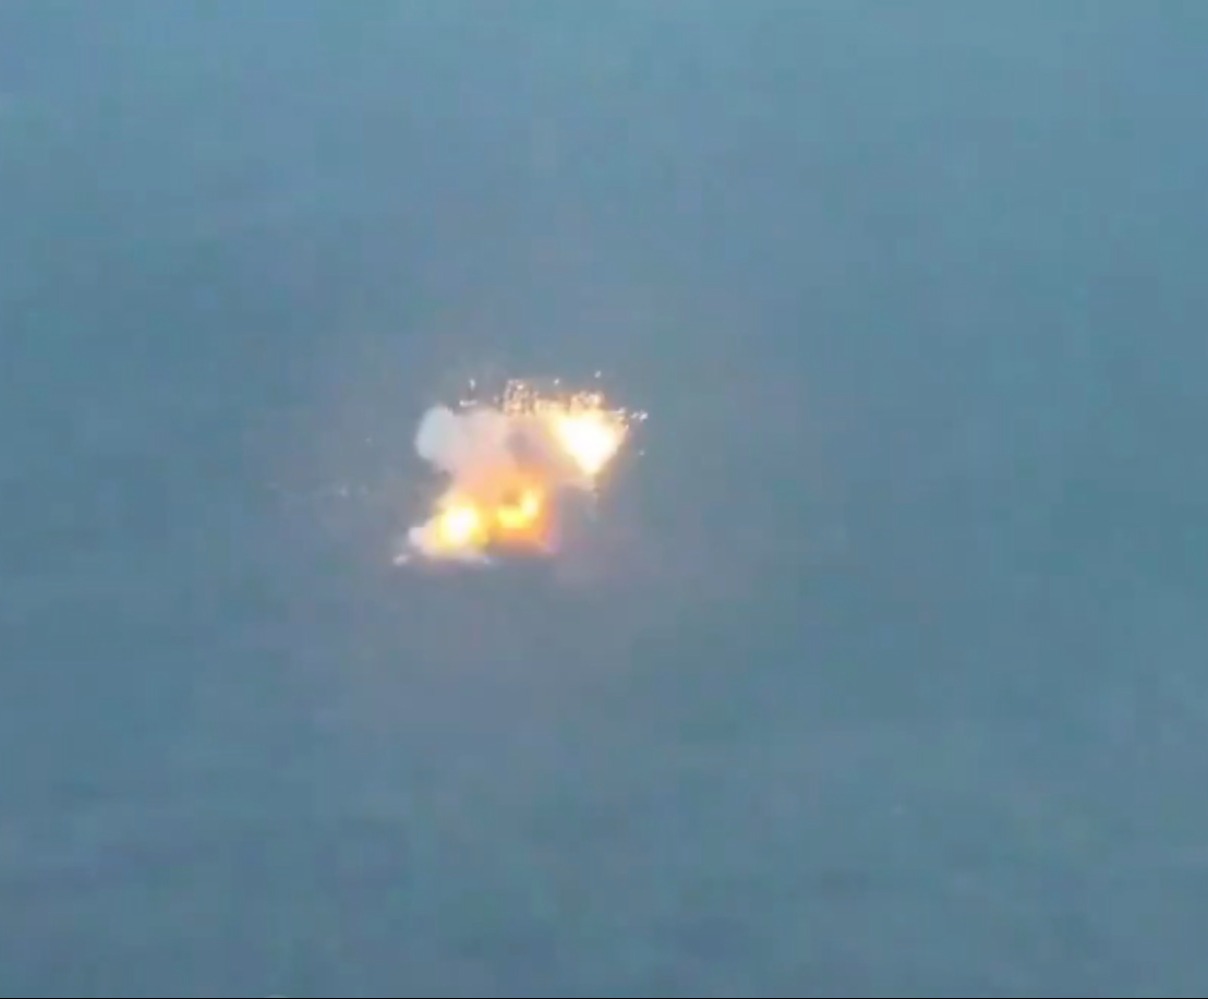 Sekunden später ging Putins teurer Panzer in Flammen auf – und löste einen riesigen Feuerball aus, der kilometerweit zu sehen war